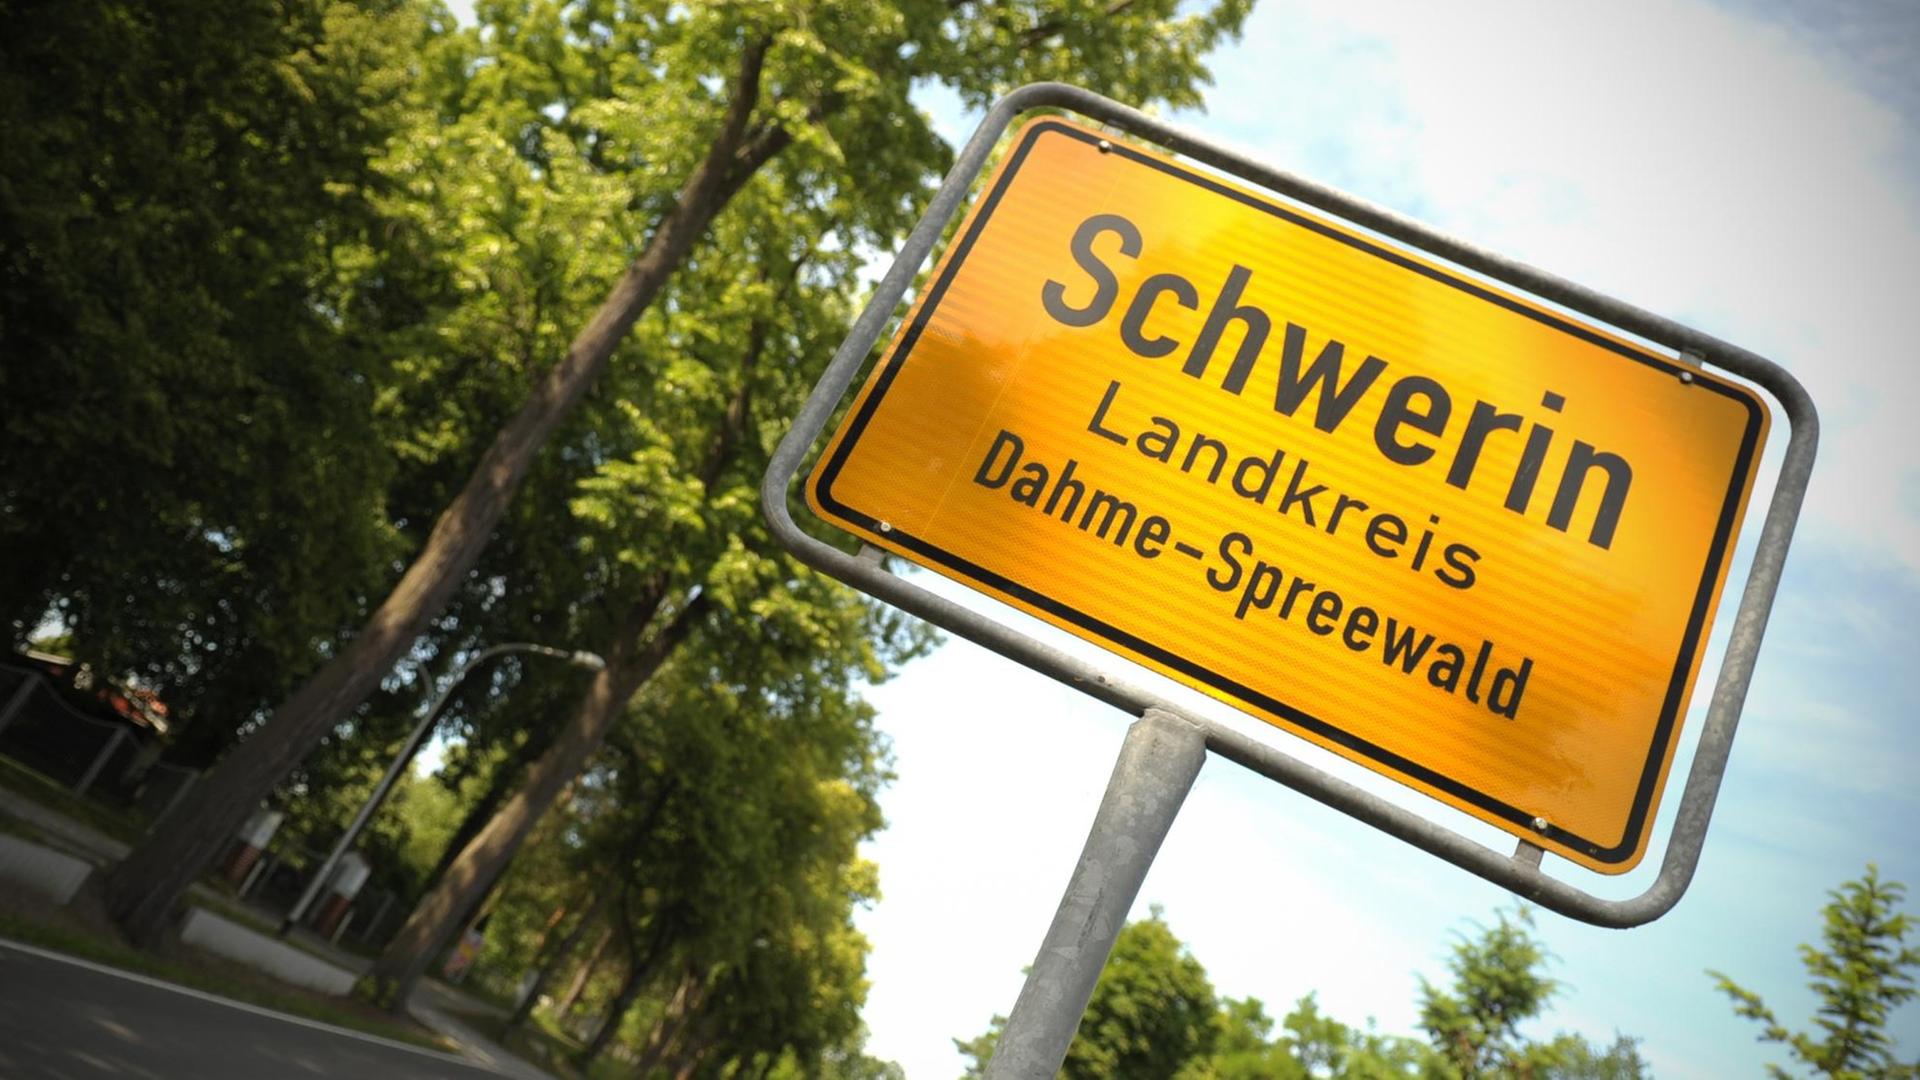 Das Ortseingangsschild von Schwerin im Landkreis Dahme - Spreewald